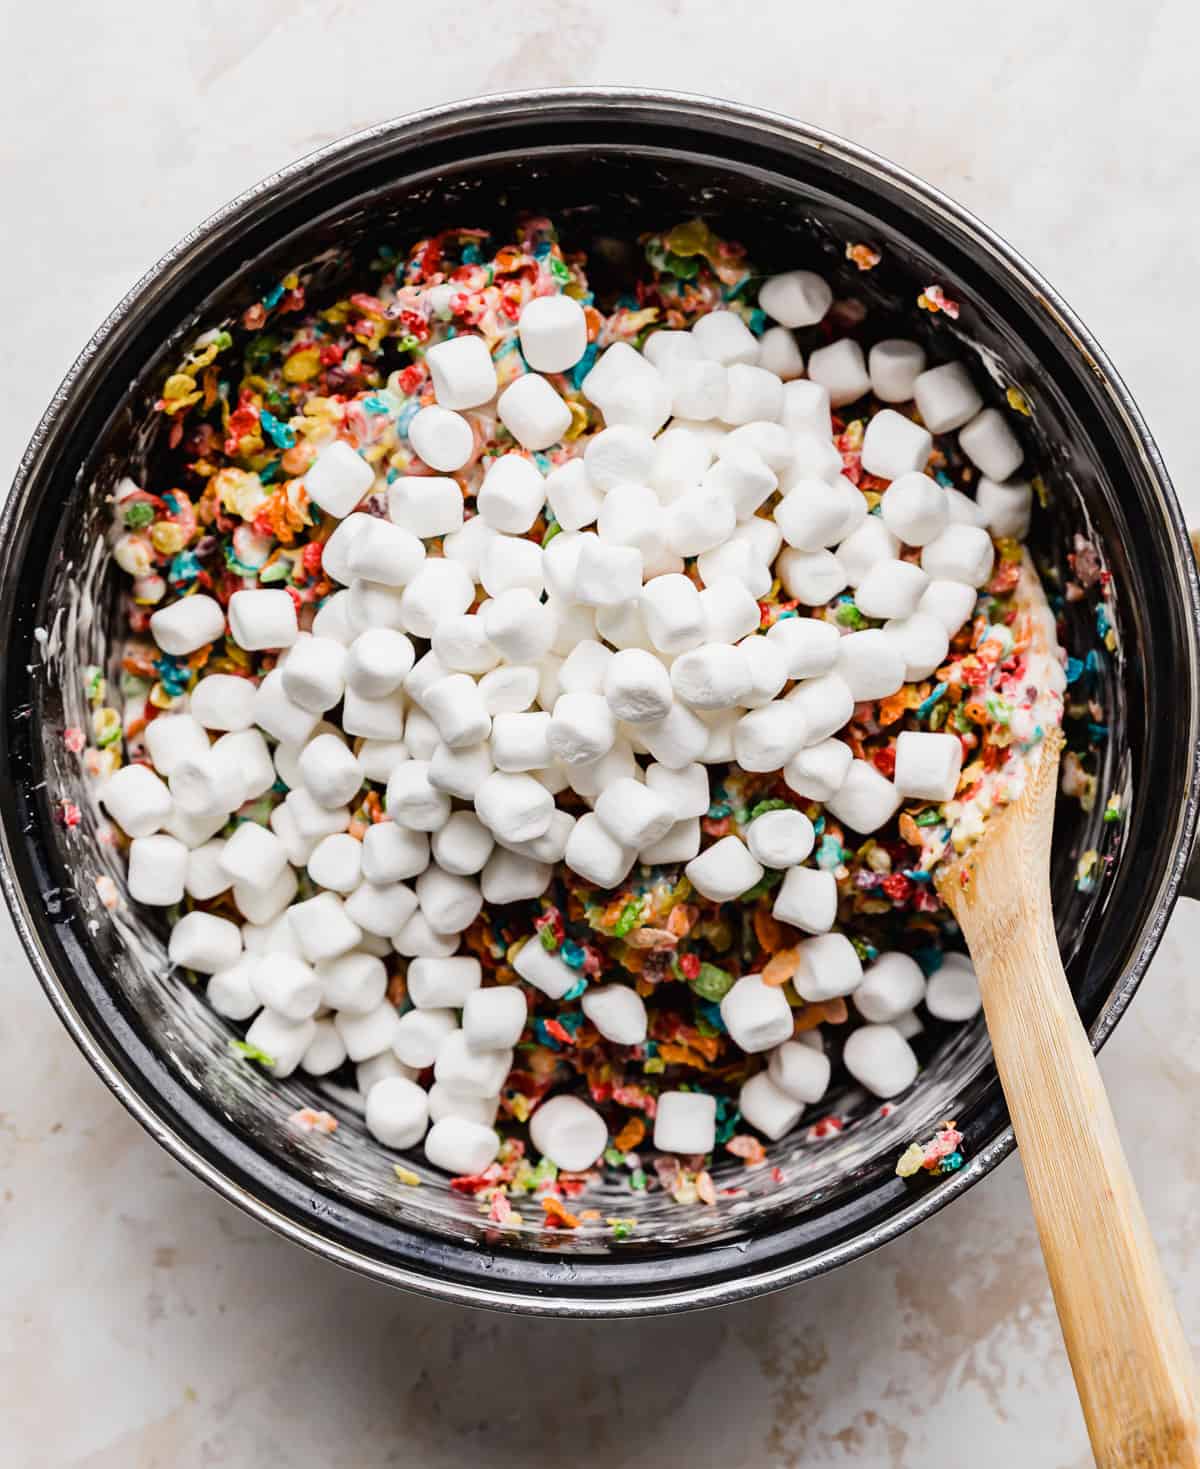 Mini marshmallows overtop Fruity Pebble Rice Krispie Treat mixture in a pot.